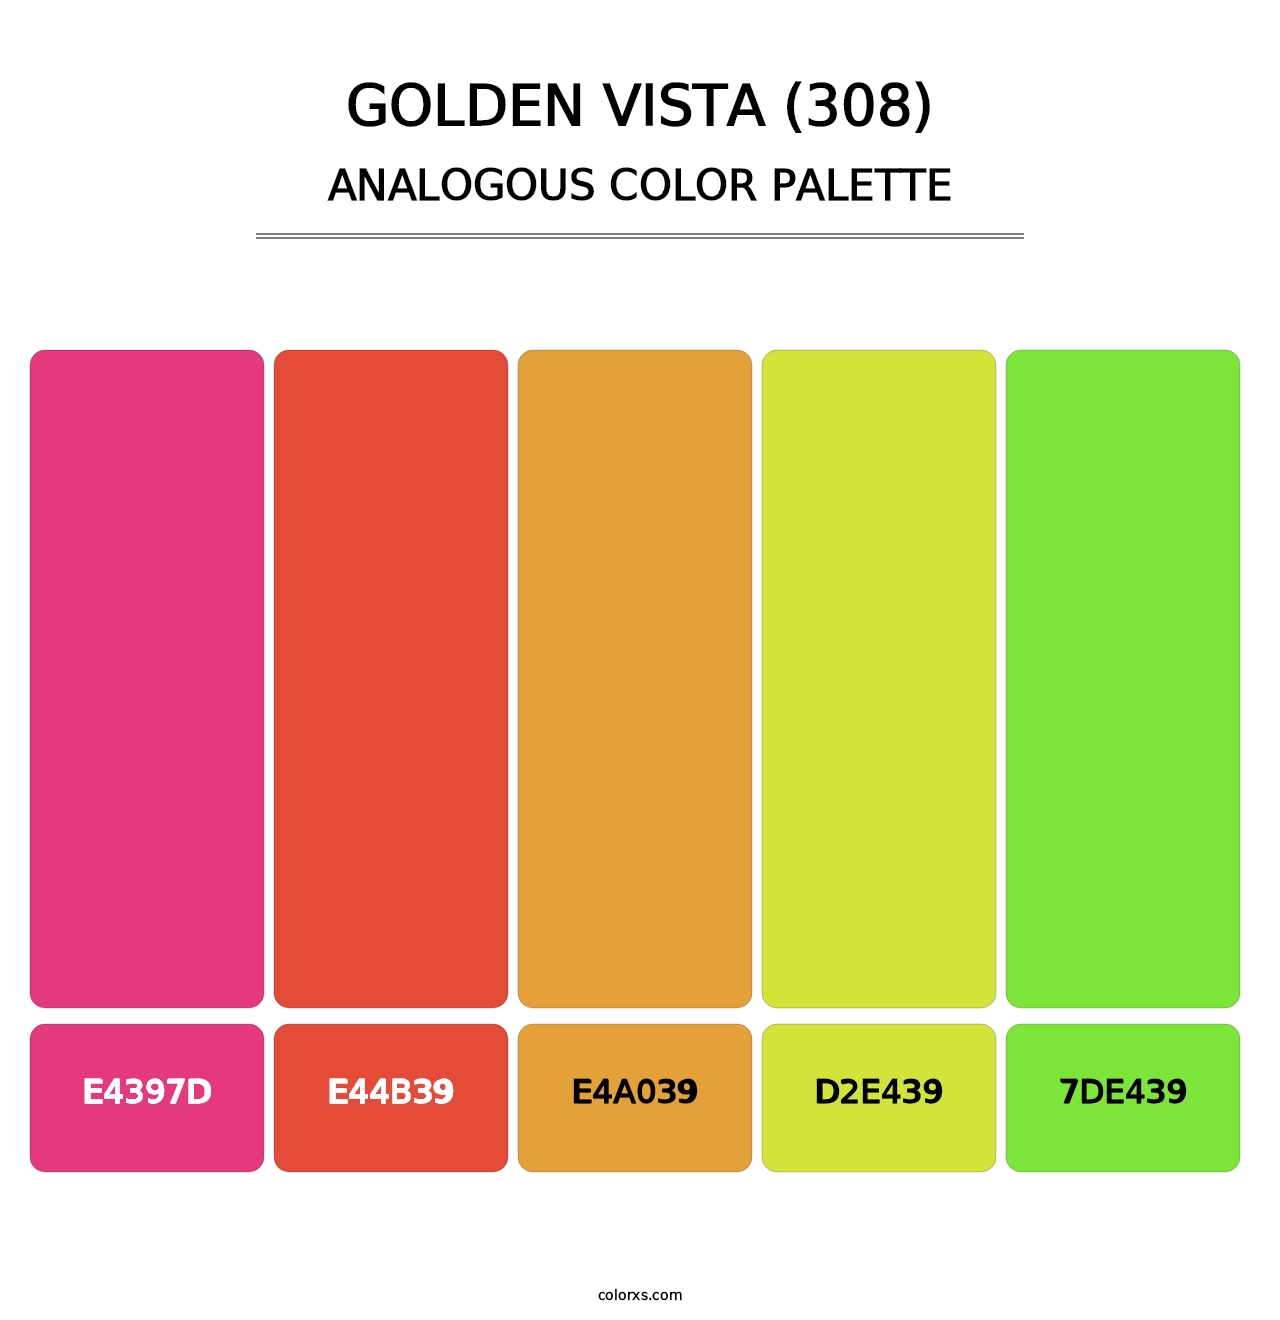 Golden Vista (308) - Analogous Color Palette